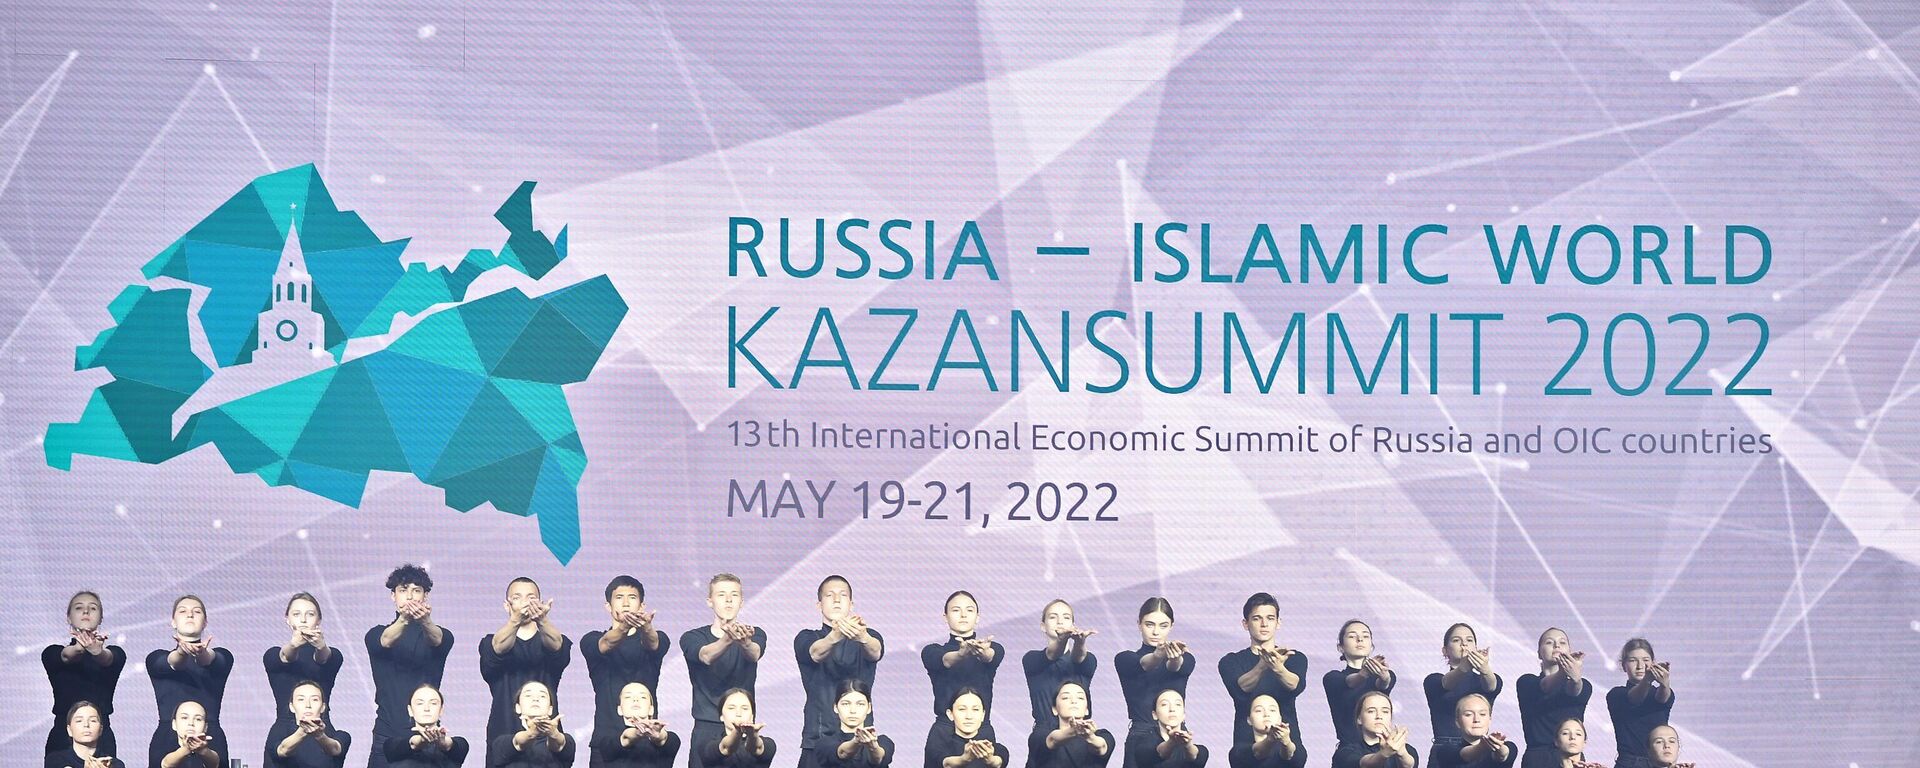 سیزدهمین اجلاس بین المللی اقتصادی روسیه - جهان اسلام: اجلاس کازان-۲۰۲۲ - اسپوتنیک ایران  , 1920, 20.05.2022